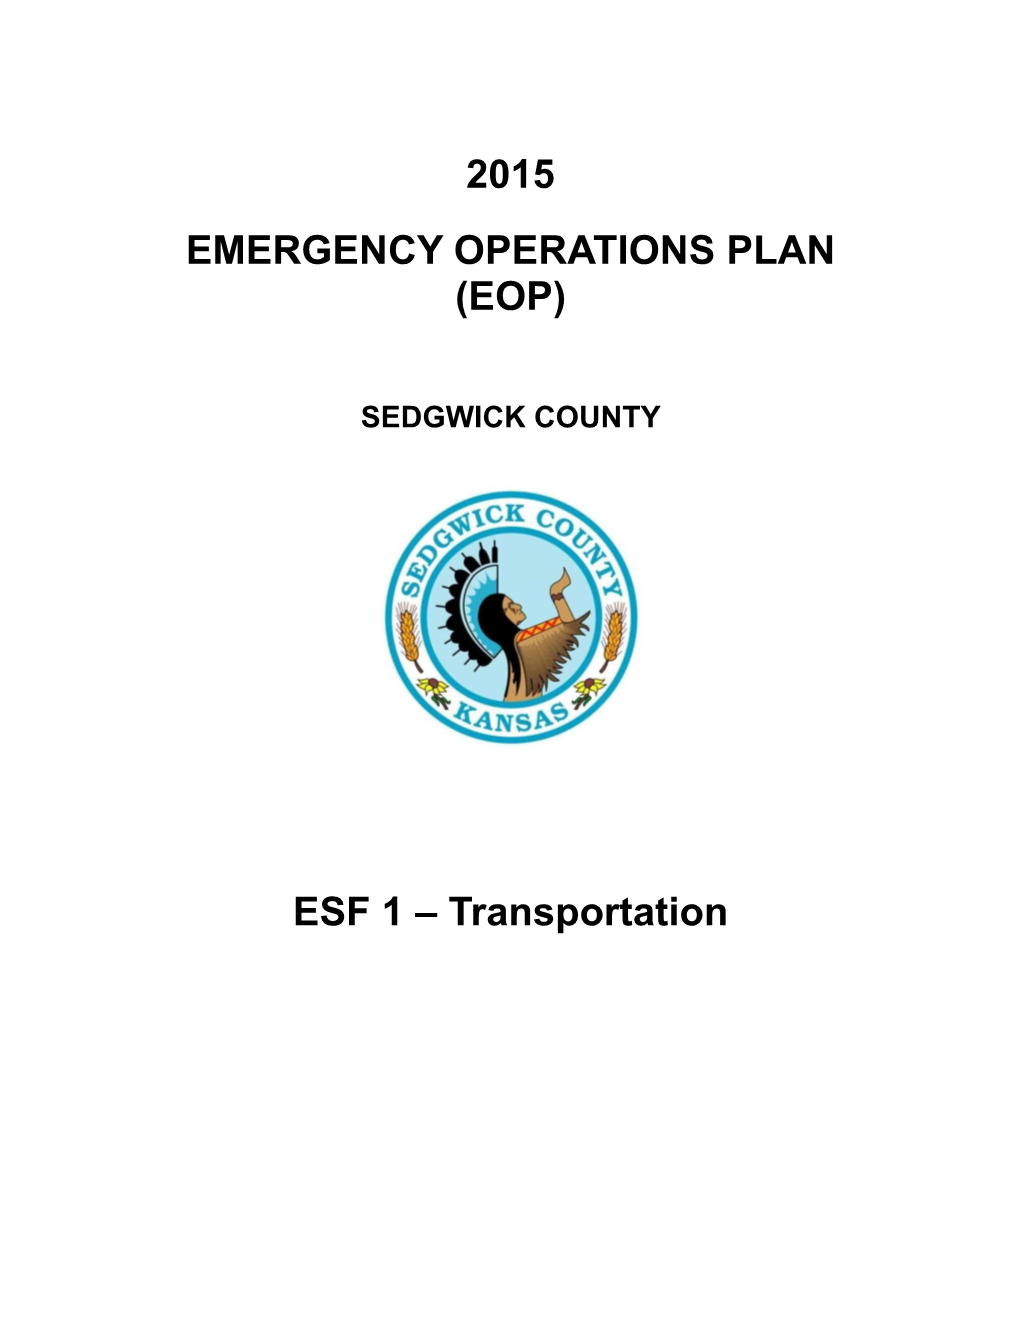 ESF1 Transportation